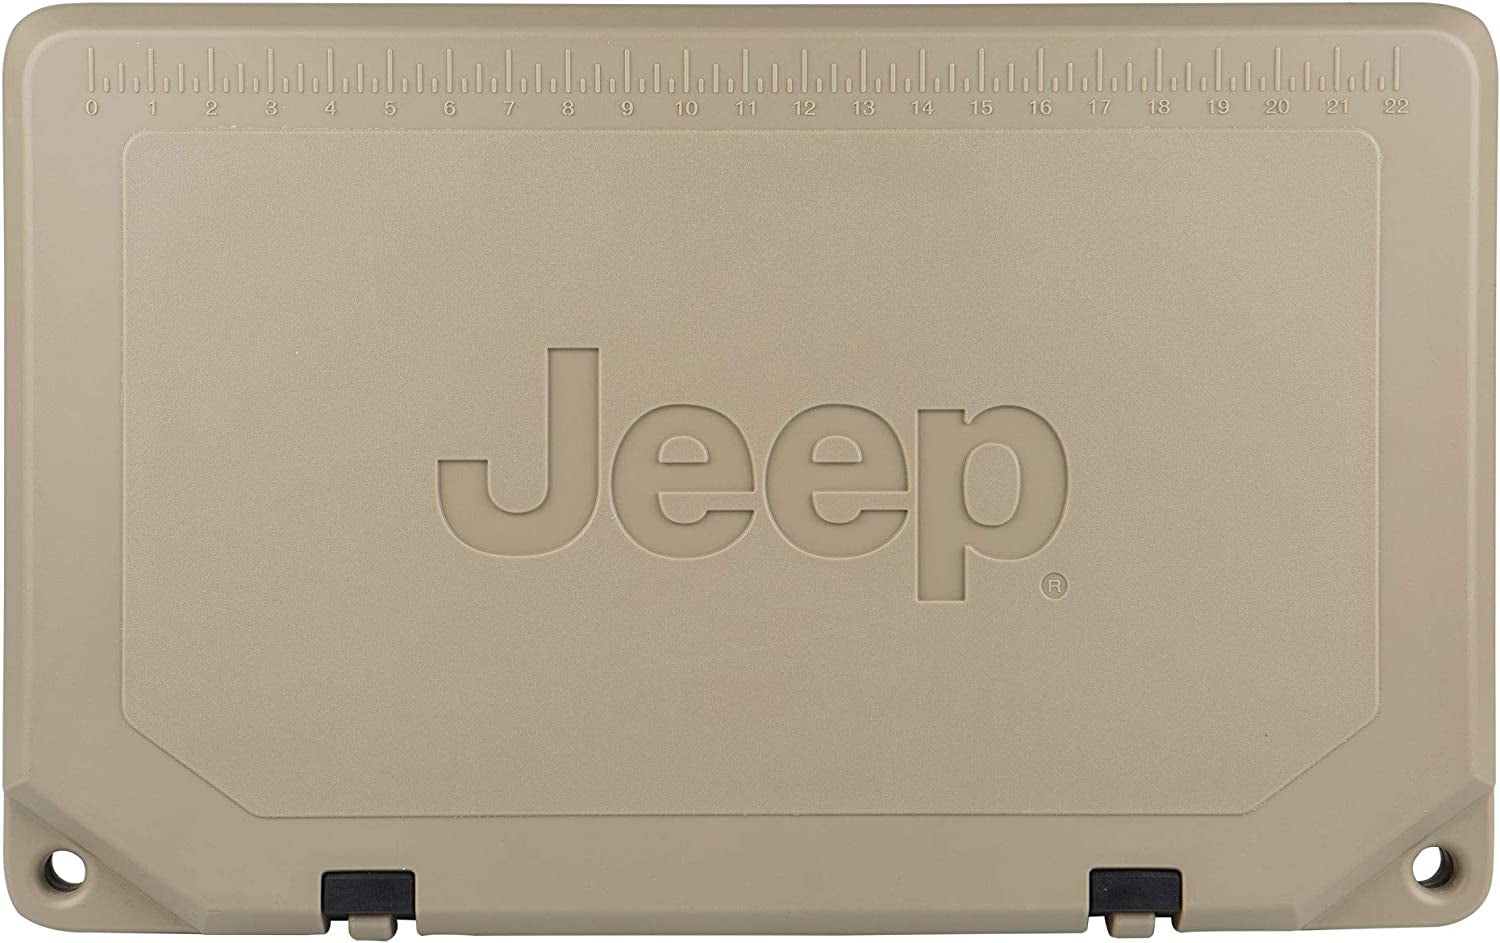 40 Jeep Edition Cooler, Tan, 40 QT